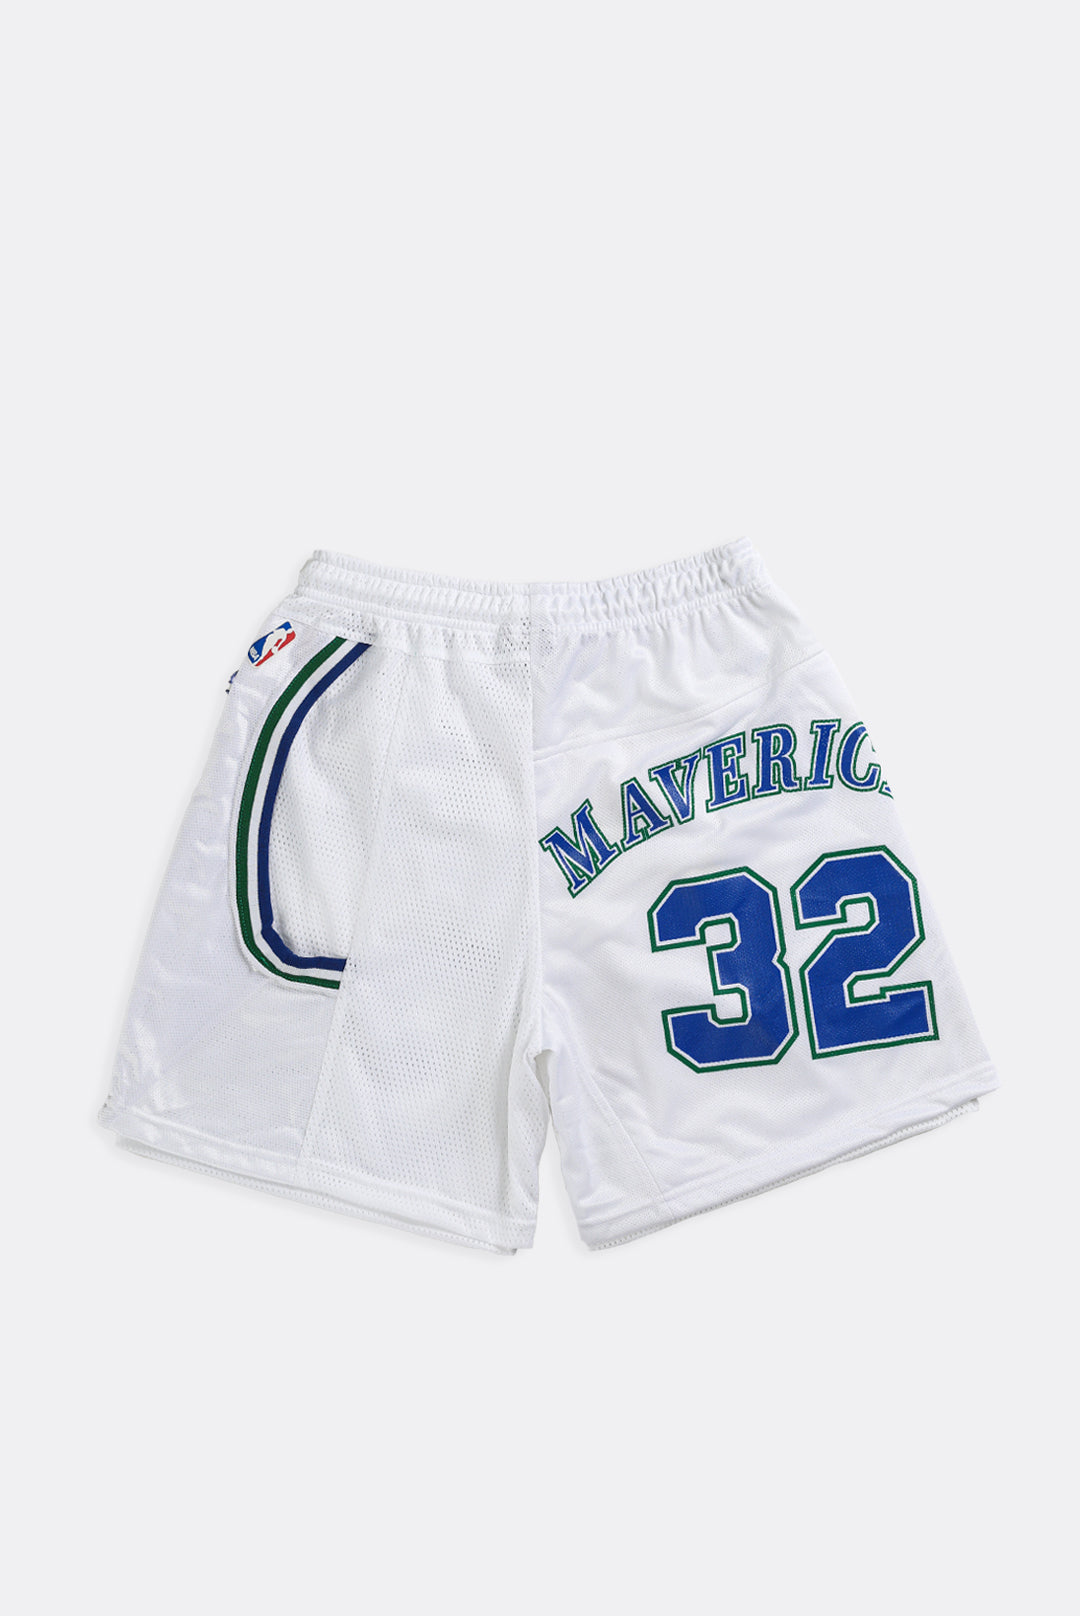 dallas mavericks shorts white